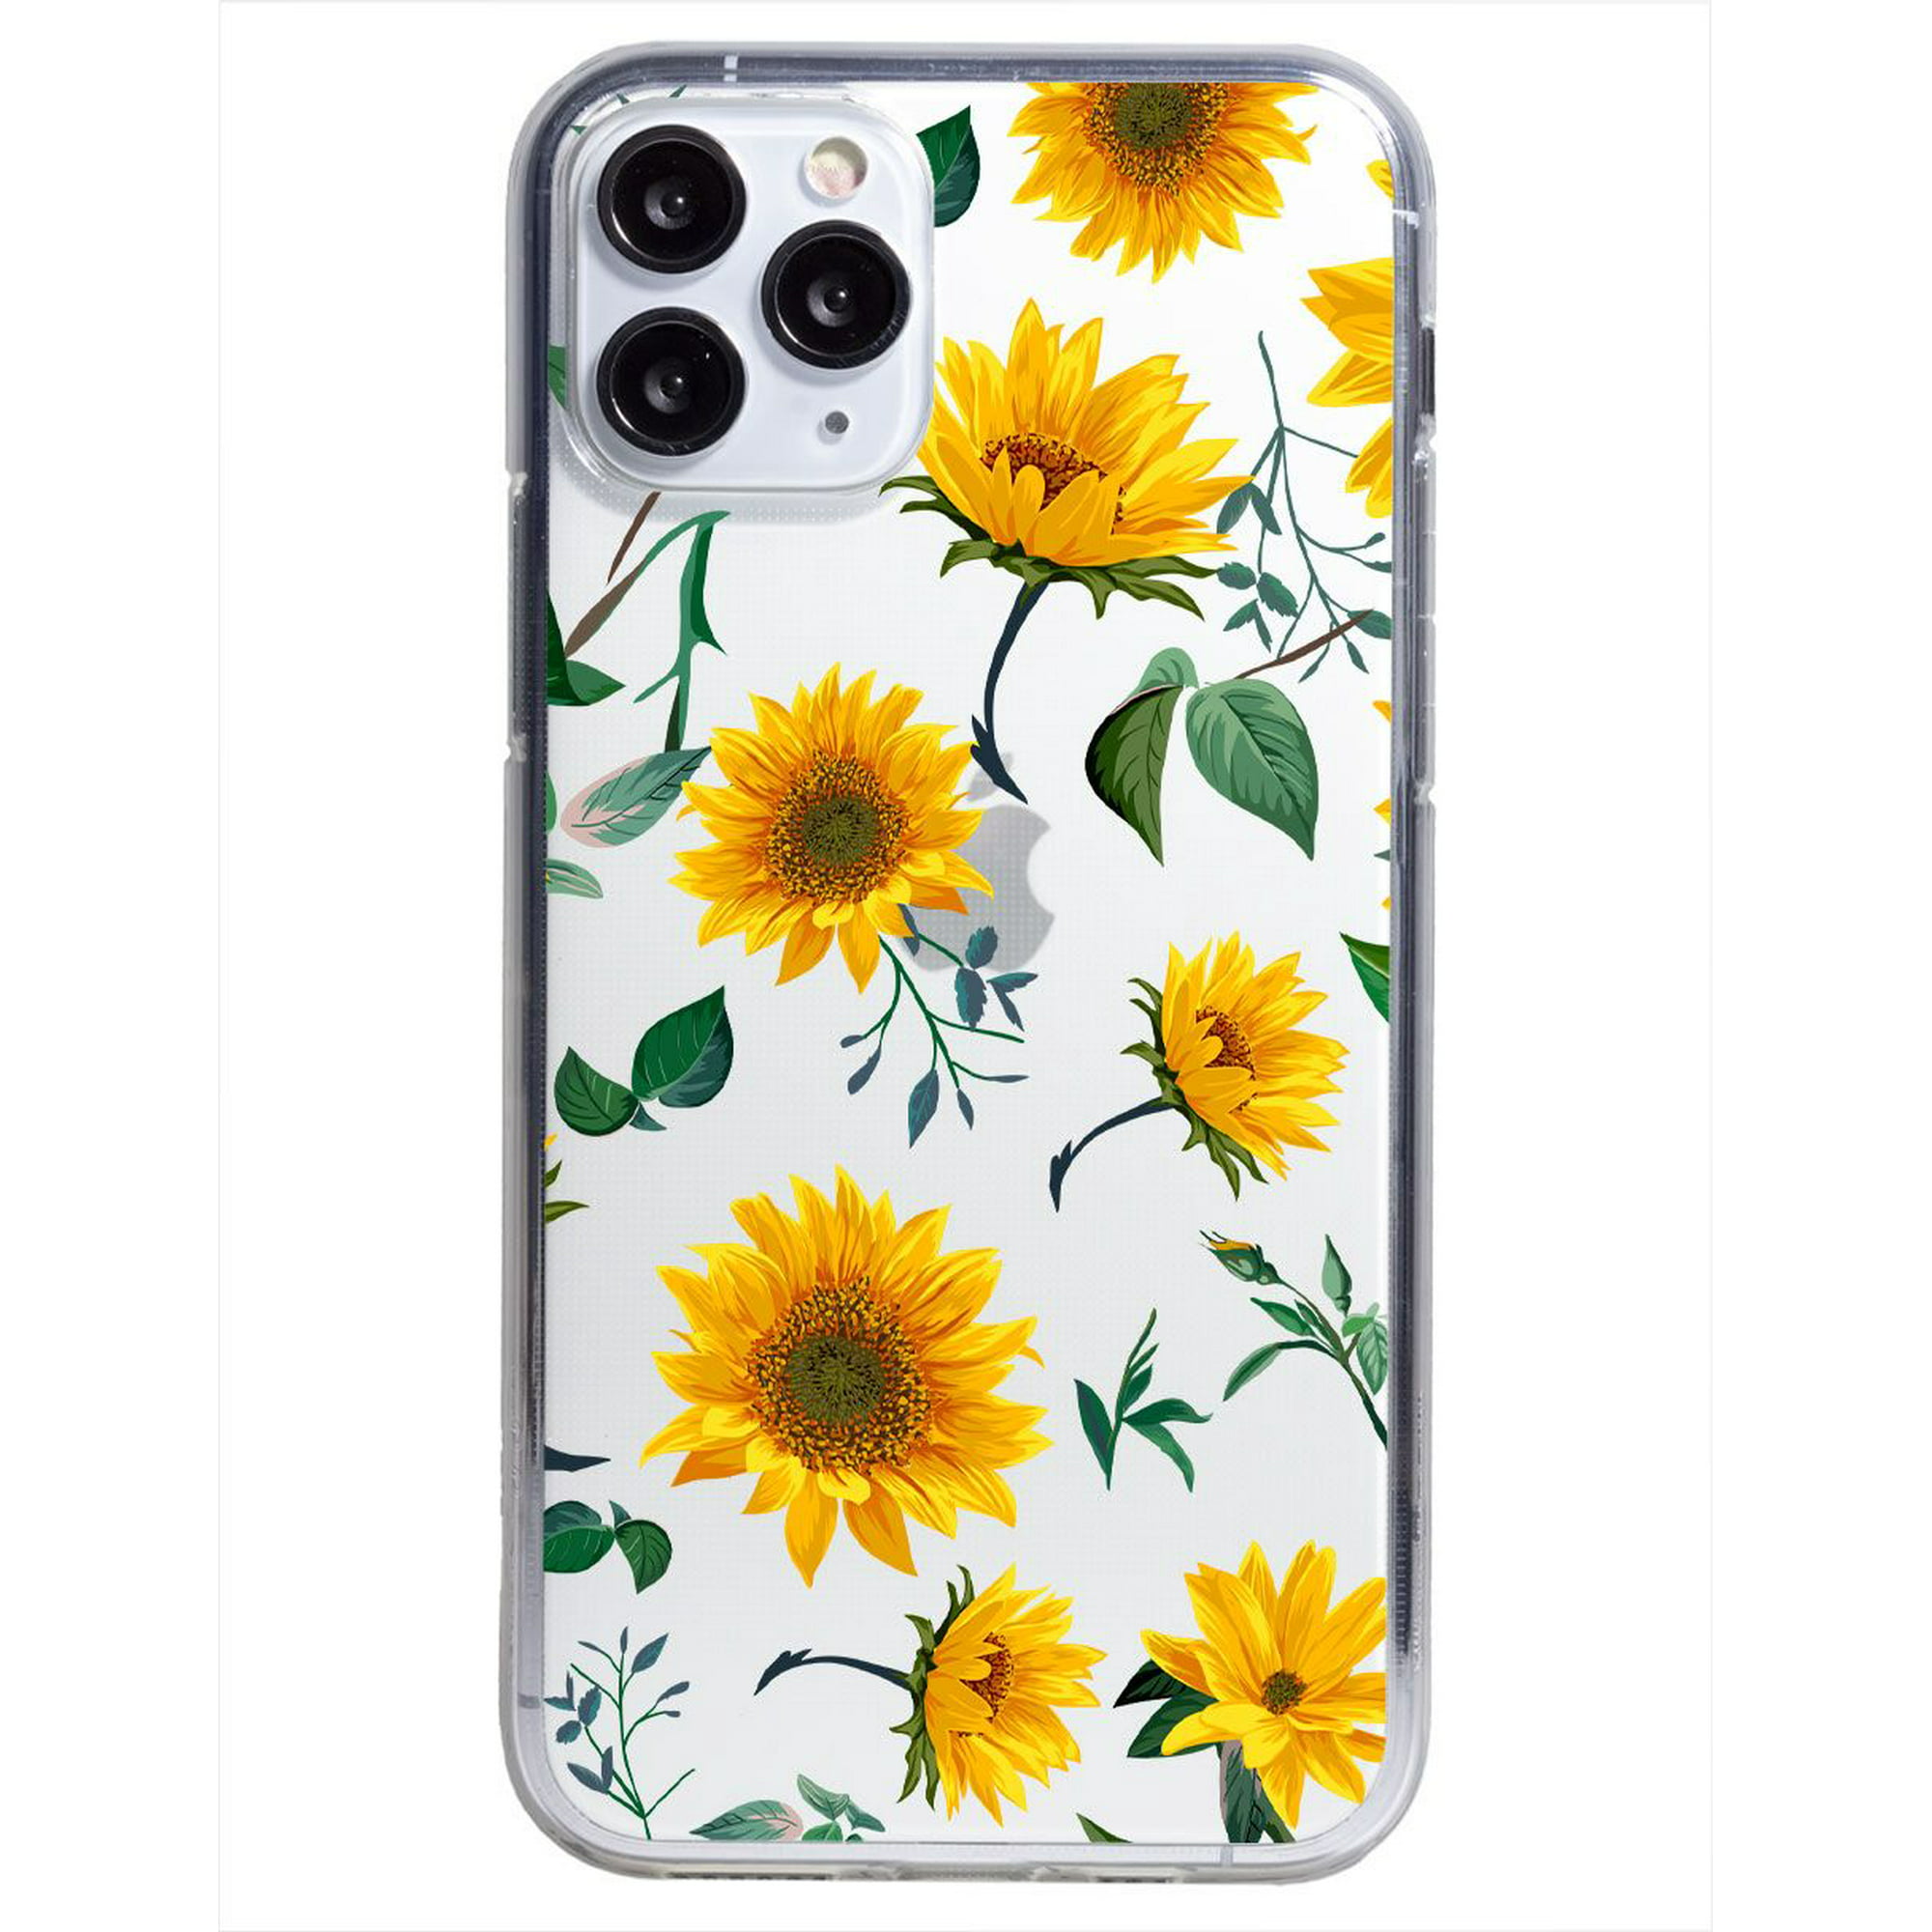 Funda para iphone 11 pro max flores girasoles, uso rudo, instacase protector para iphone 11 pro max antigolpes, case flores girasoles